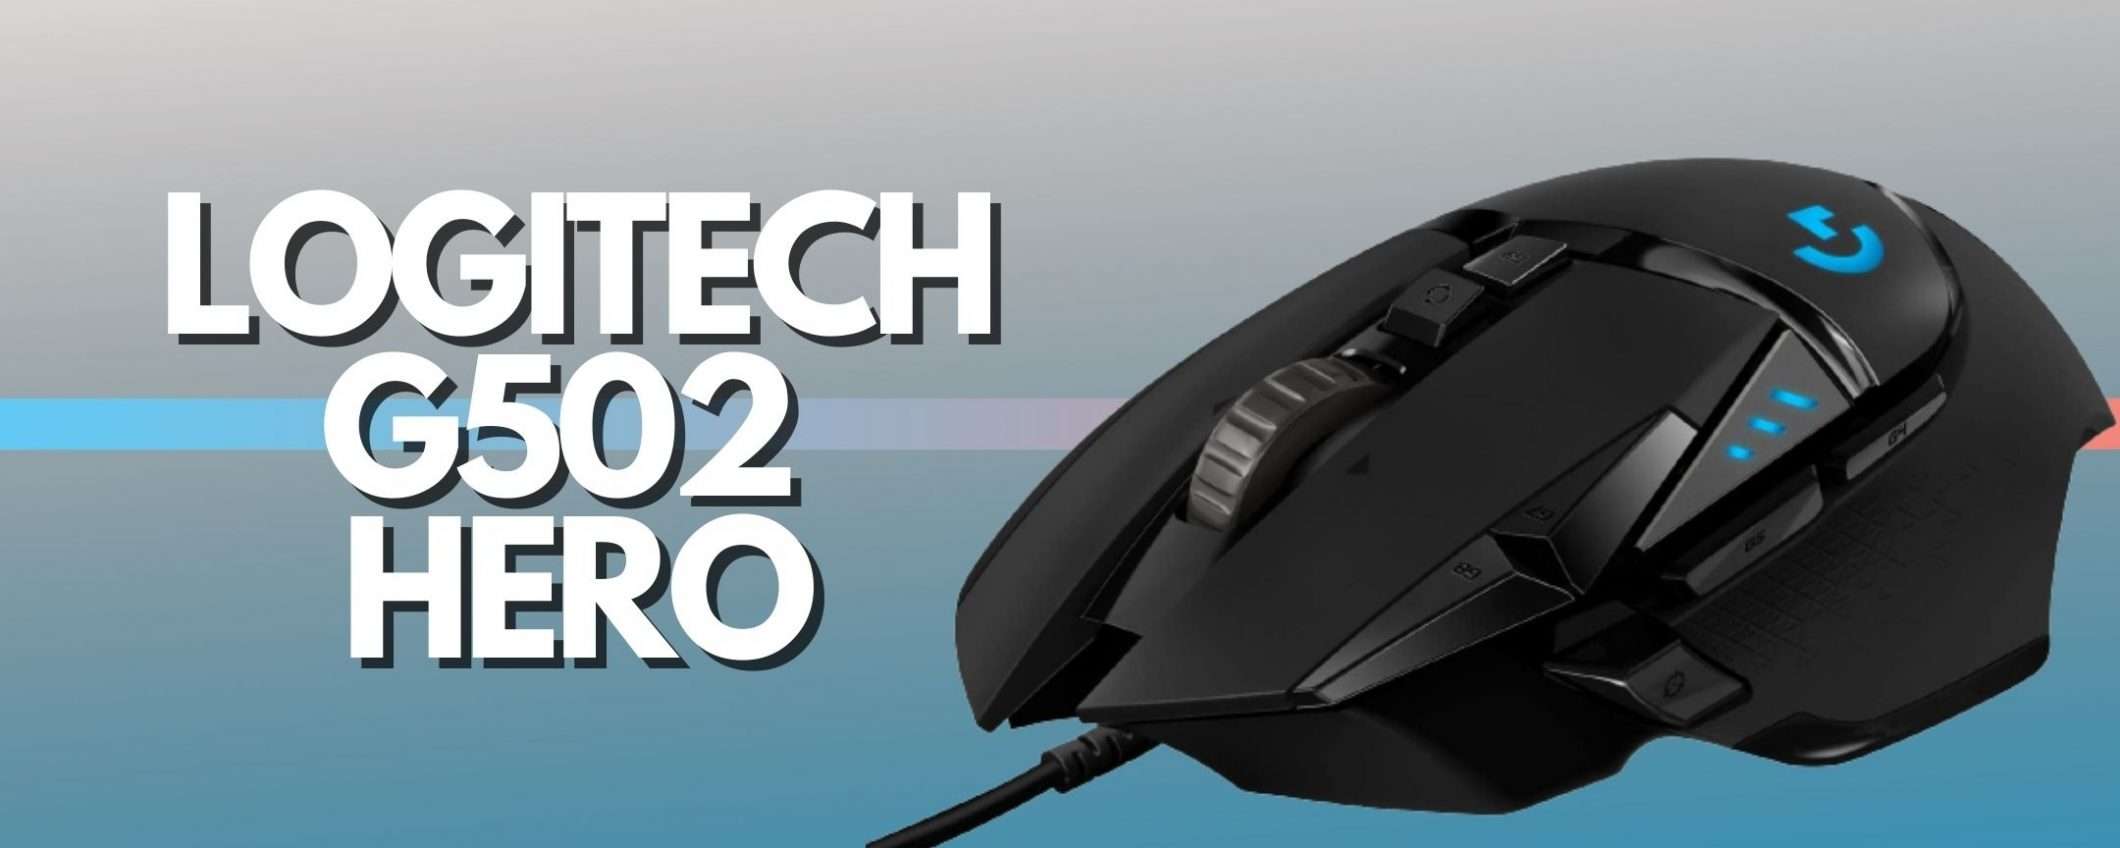 Logitech G502 HERO: mouse premium venduto a soli 49€ su Amazon